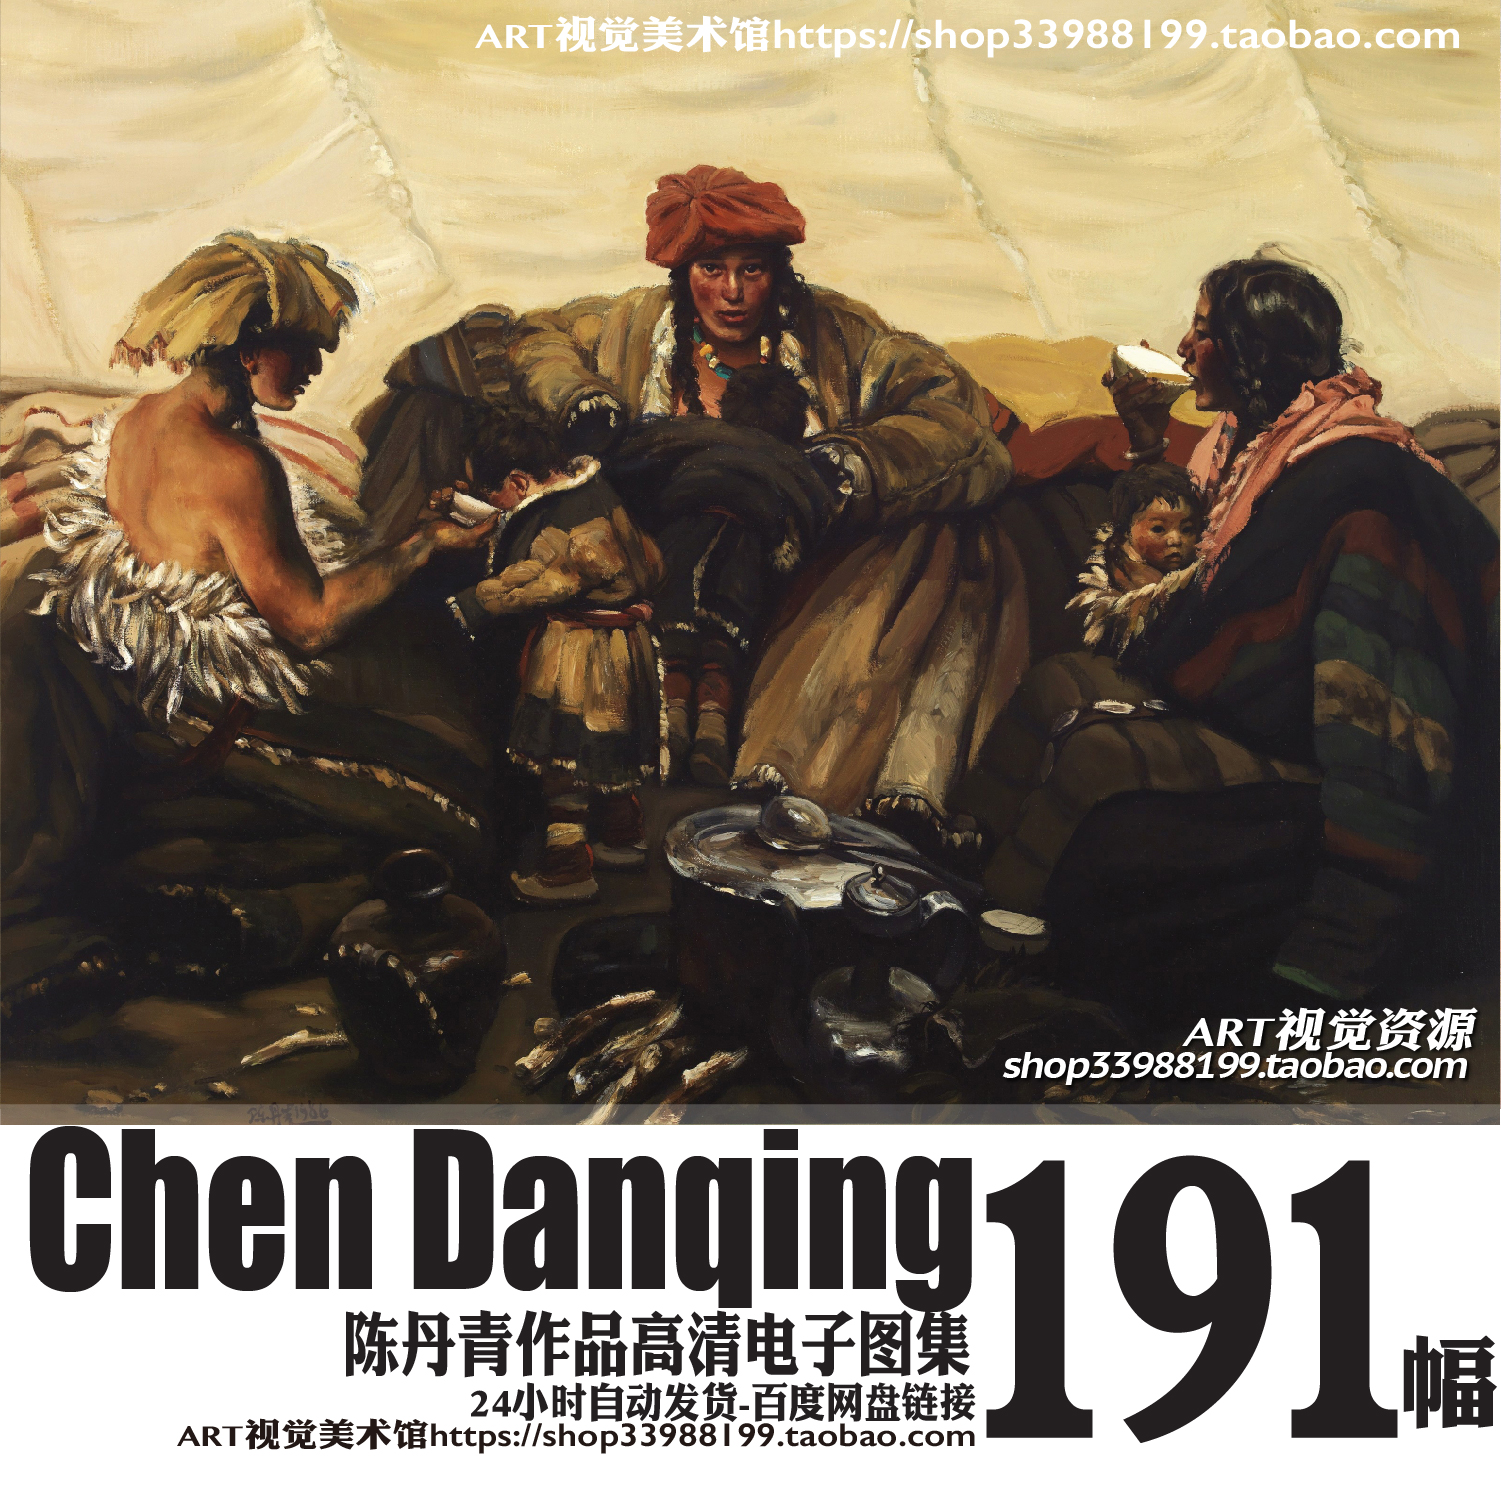 陈丹青油画人物风景作品高清图集中国当代绘画西藏组画大图素材